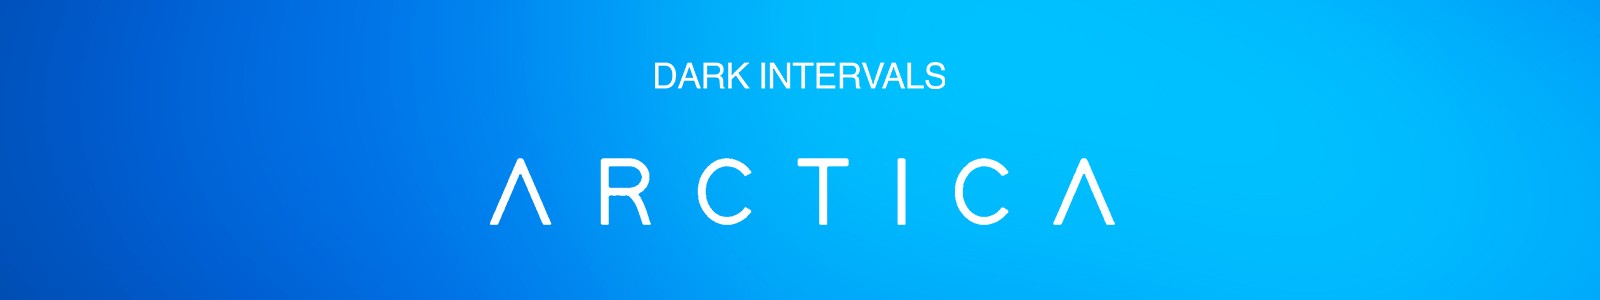 ARCTICA by Dark Intervals